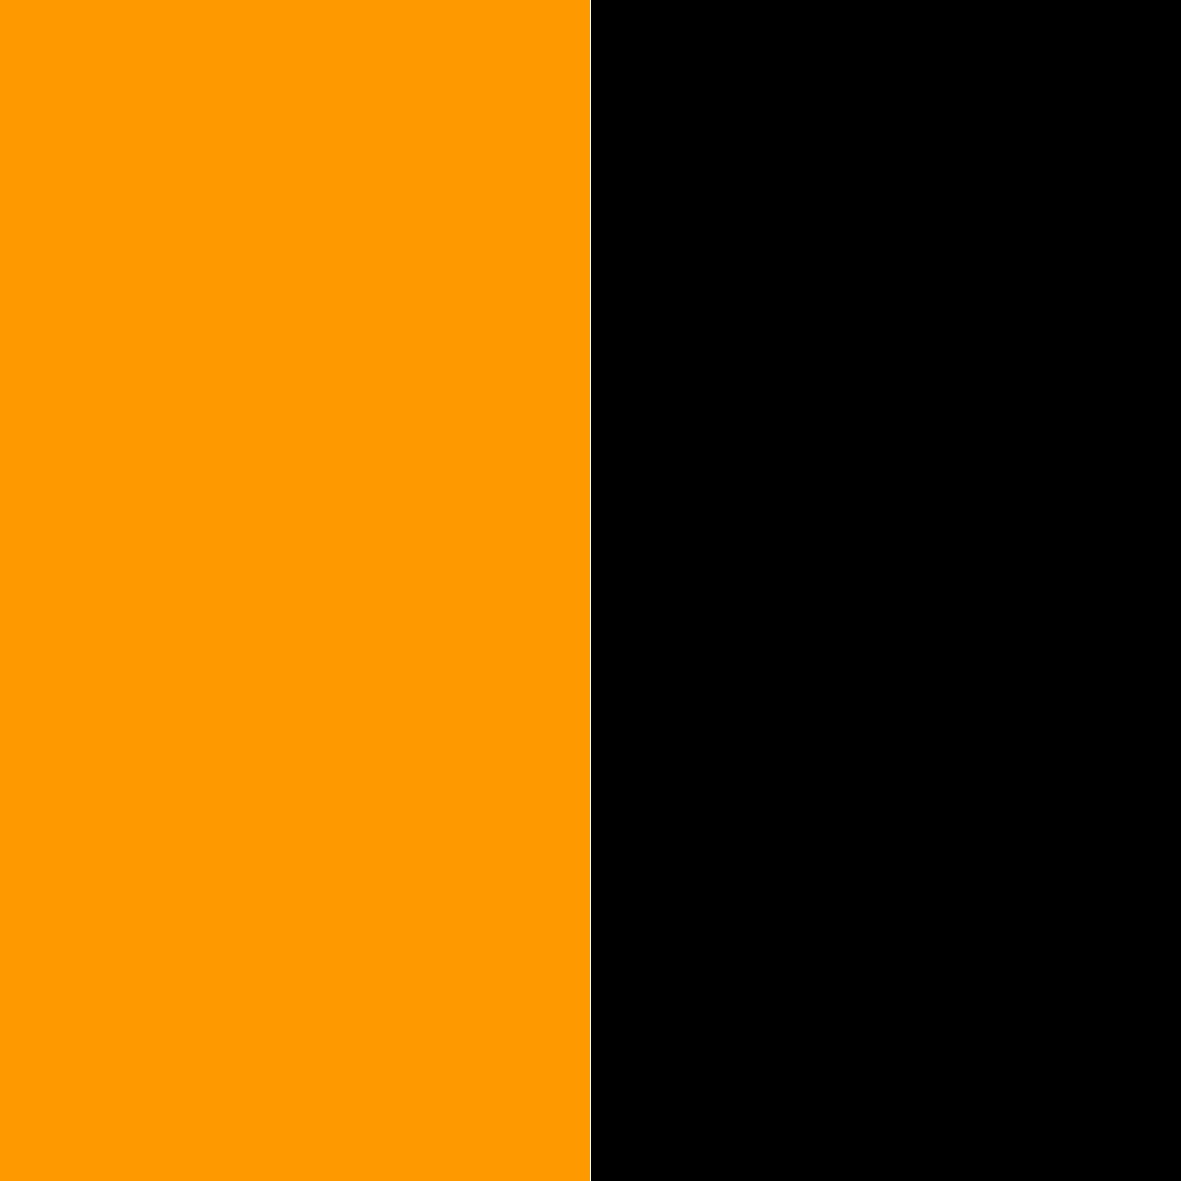 оранжевый/черный_FF9900/000000